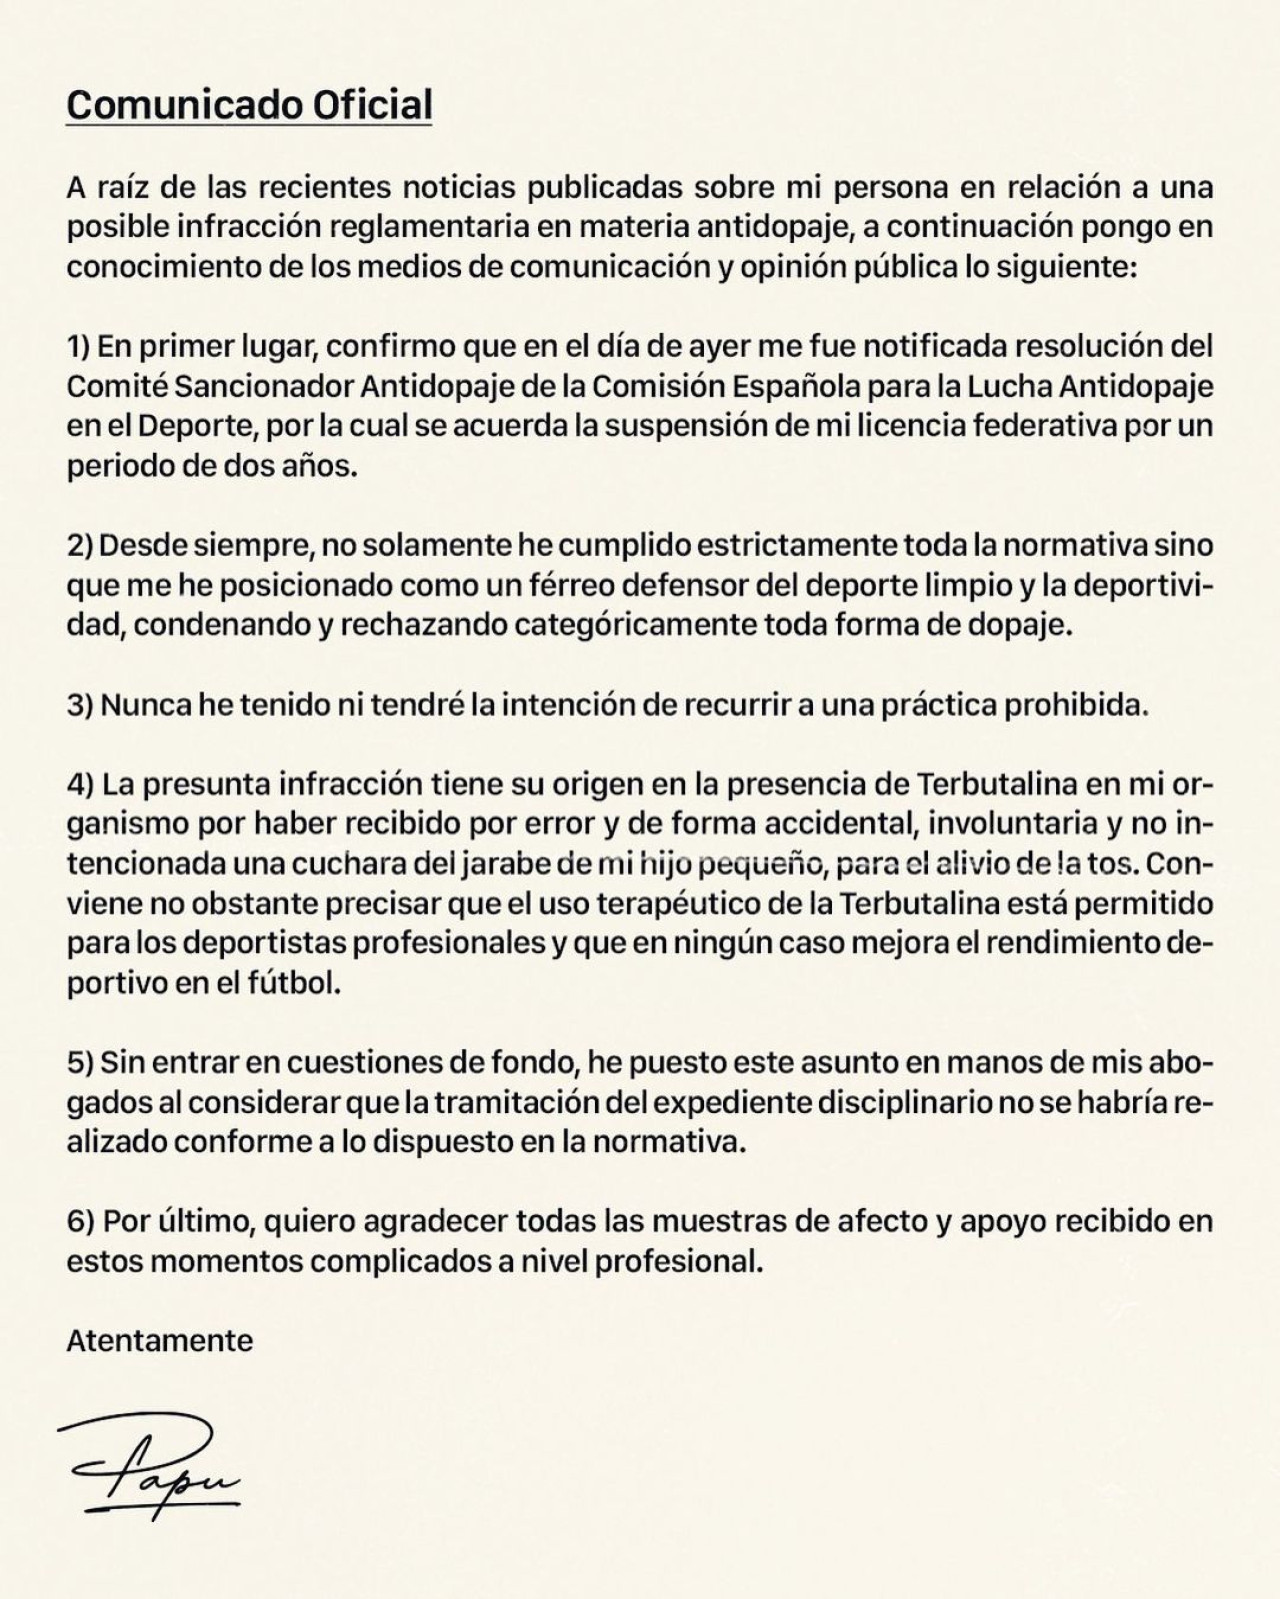 El comunicado oficial de Alejandro "Papu" Gómez. Foto: Instagram @papugomez_official.